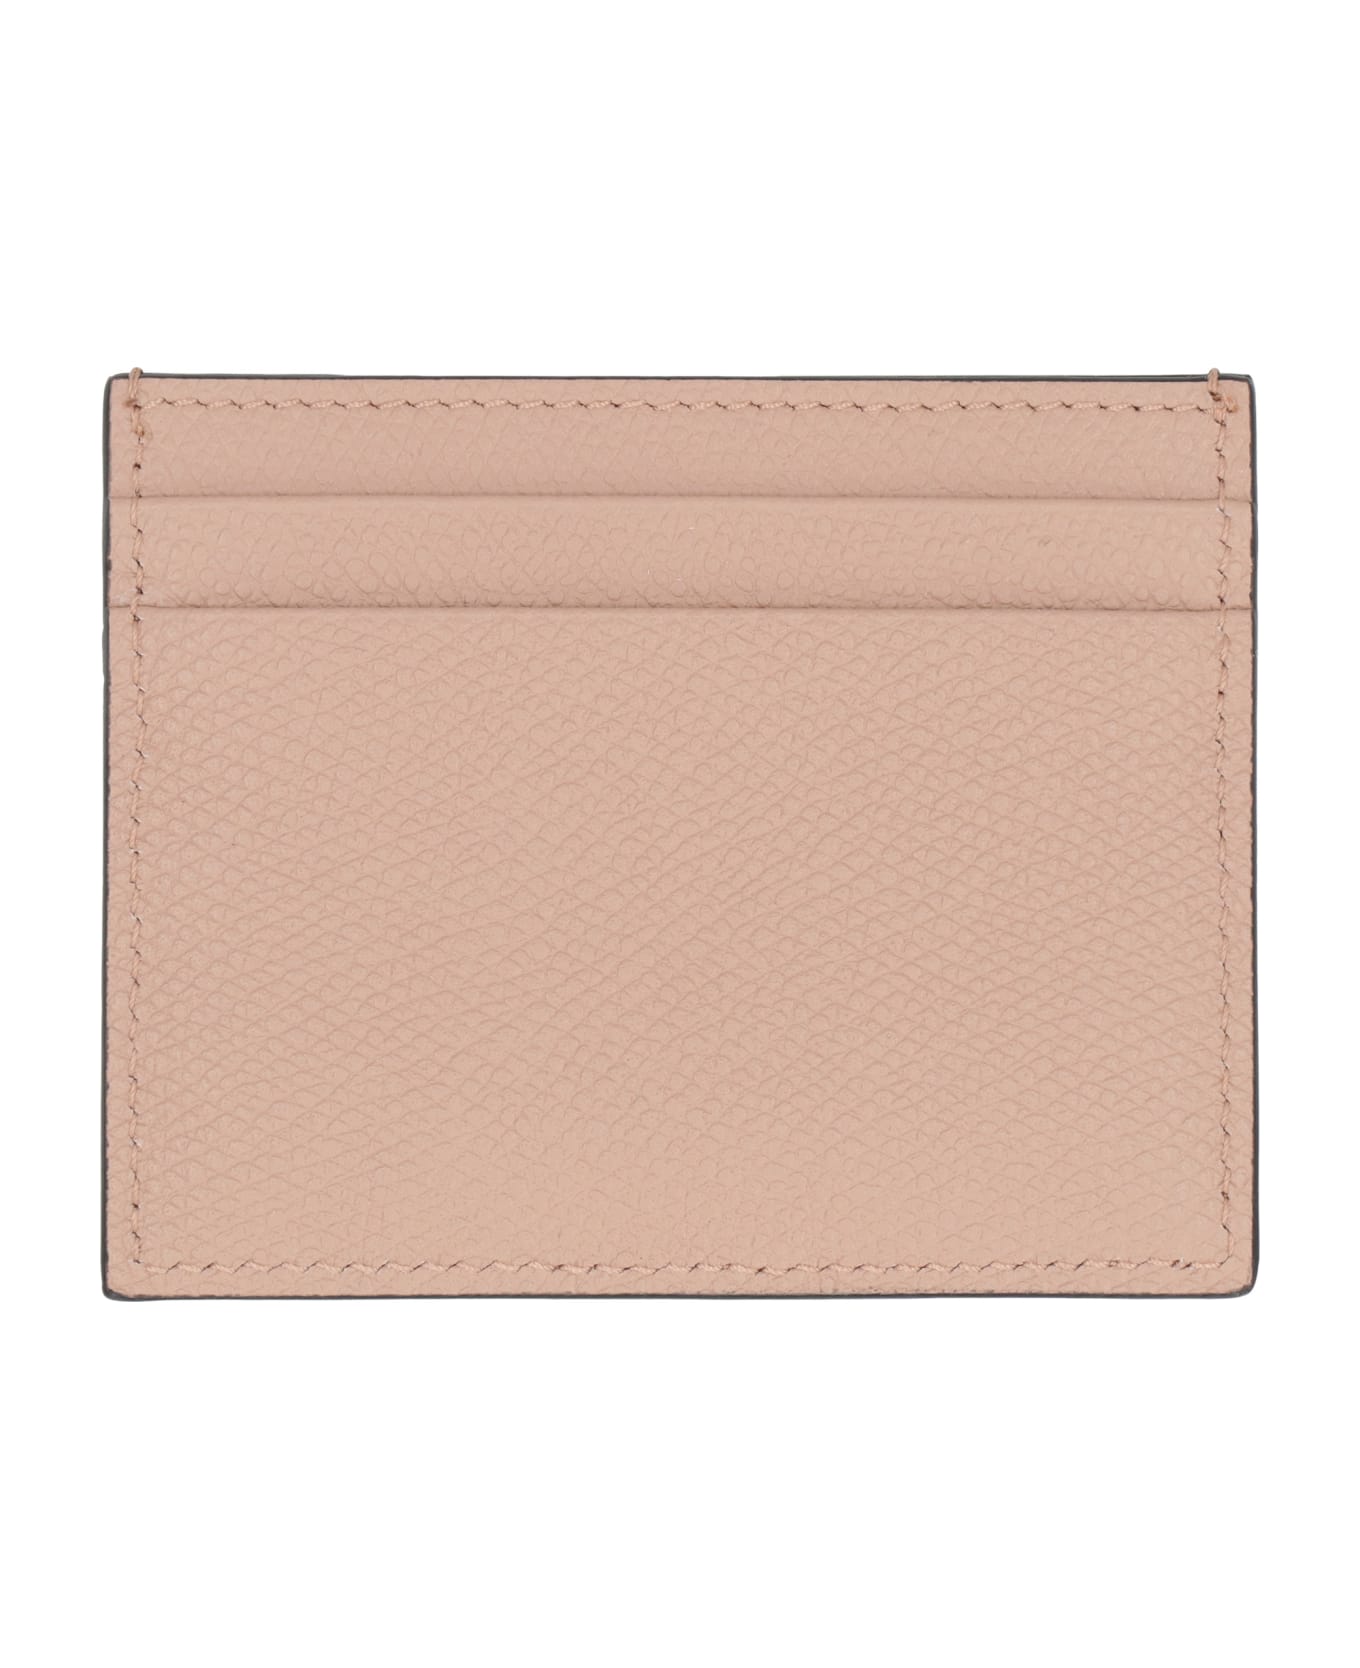 Valentino Espadrille Garavani - Logo Detail Leather Card Holder - Pink